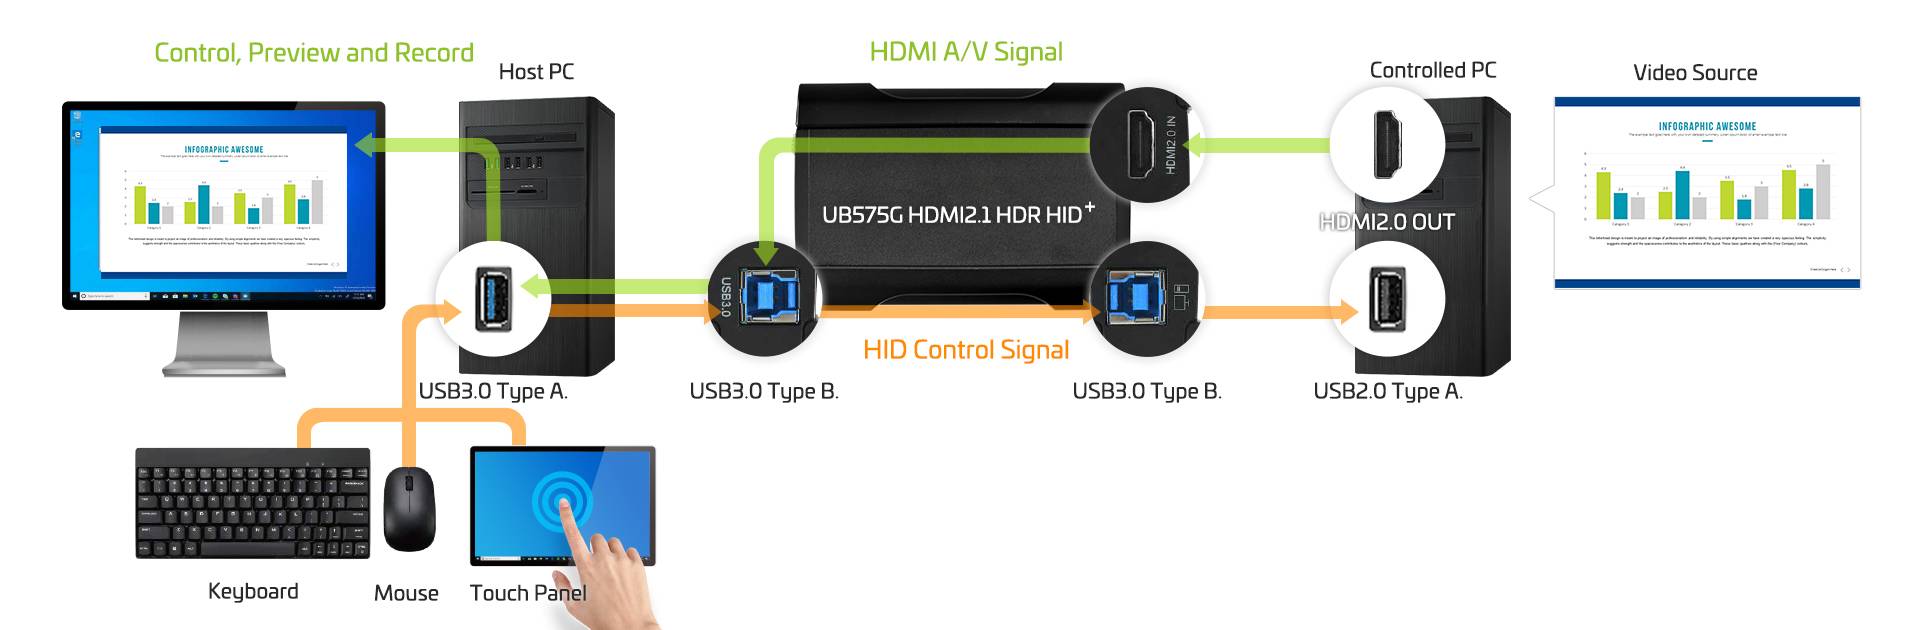 UB575G HDMI2.1 HDR HID